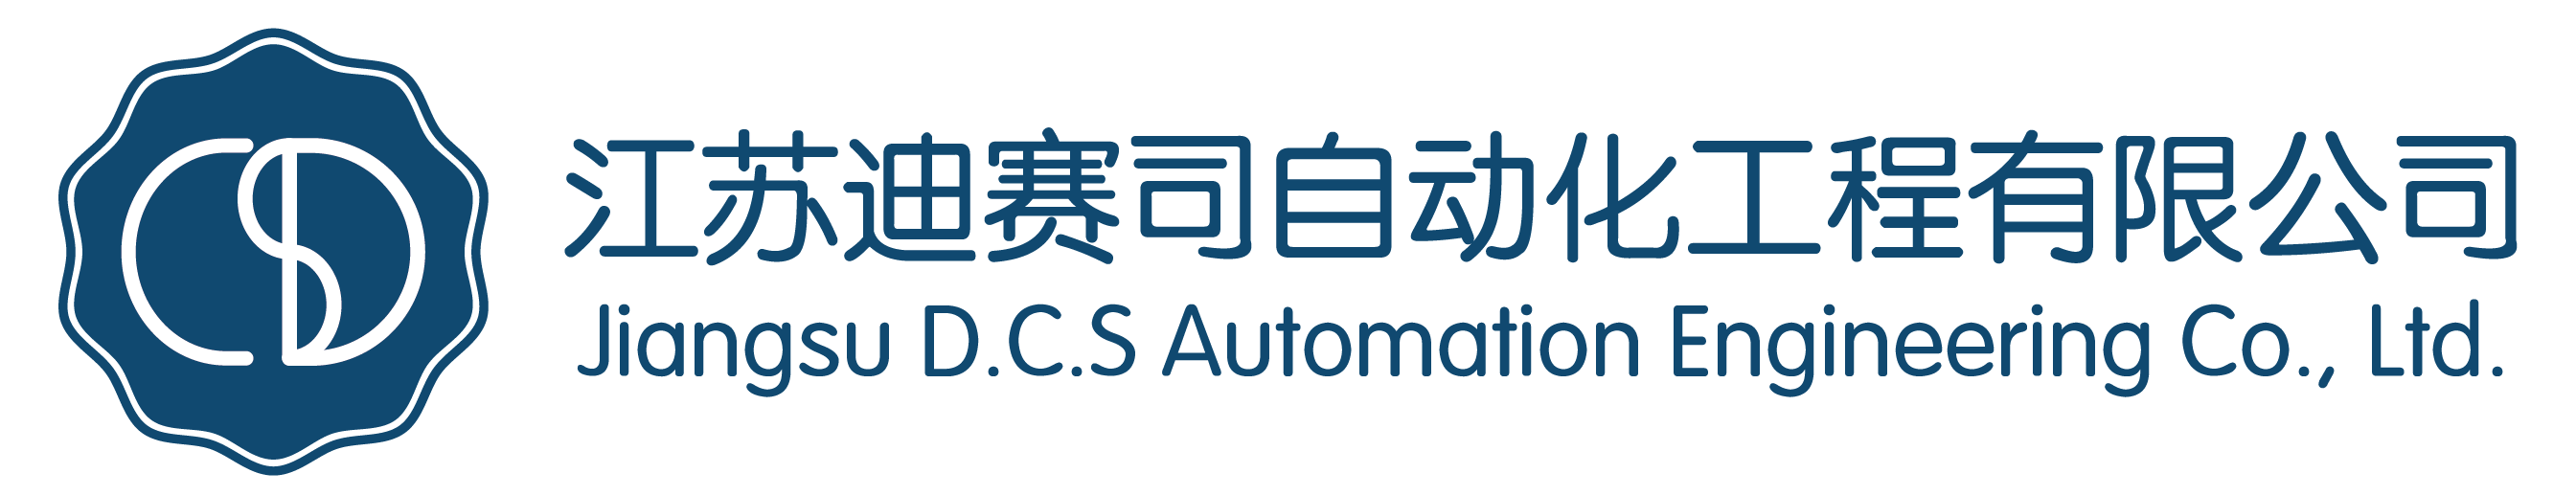 江苏迪赛司自动化工程通过CMMI3级认证